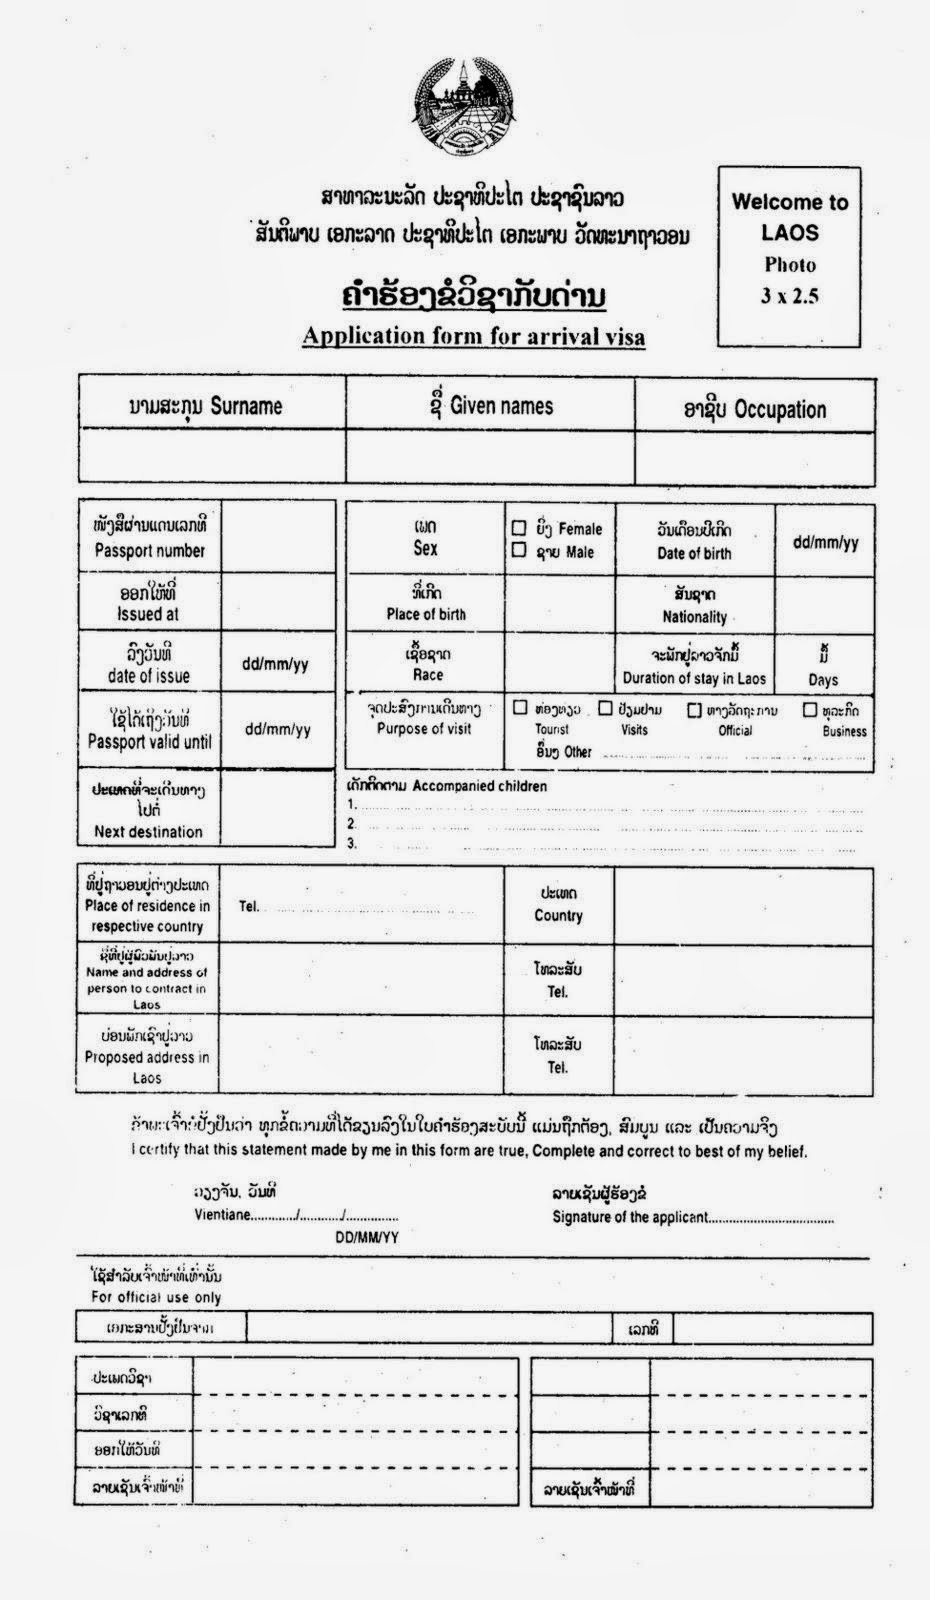 Formulario de solicitar visa a Laos